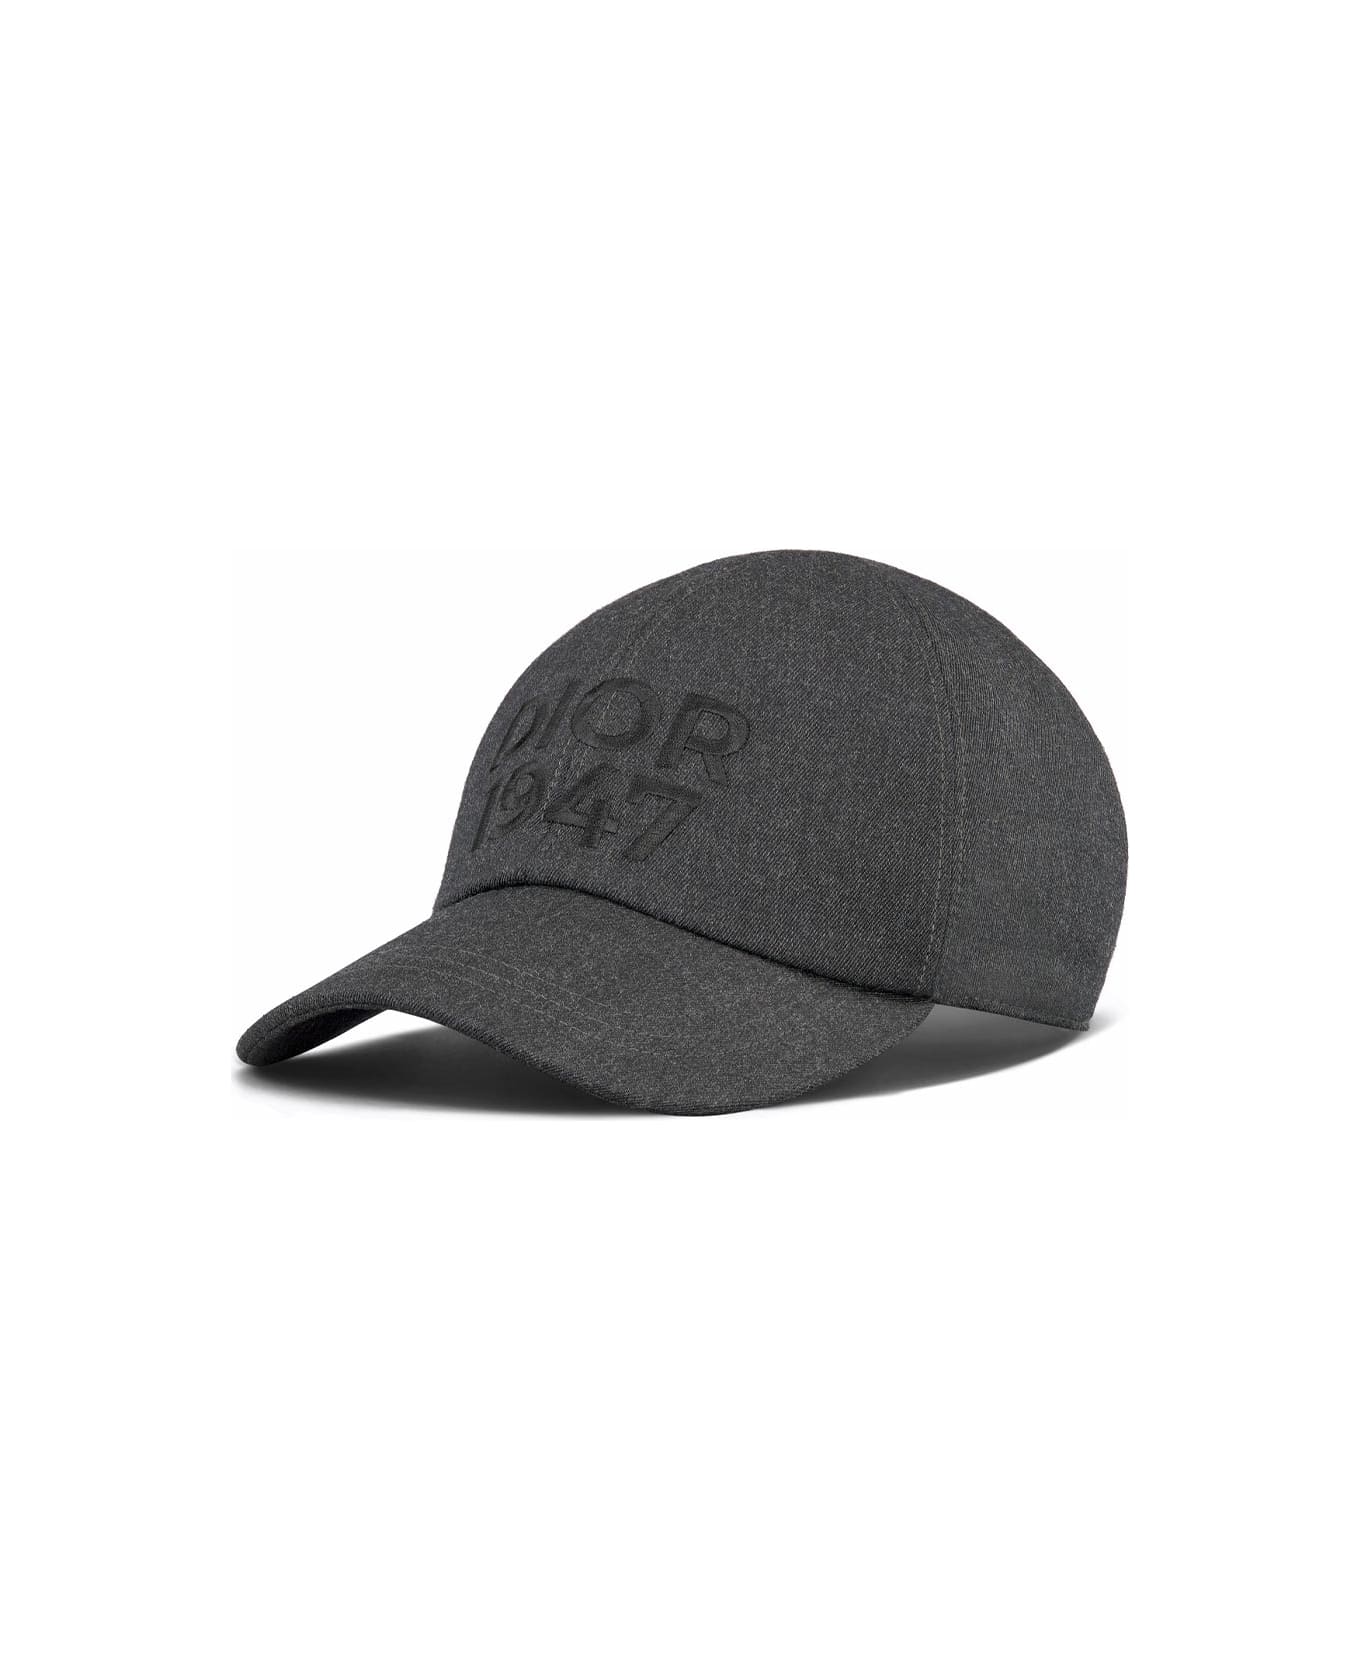 Dior Homme Hat - GRIGIO 帽子